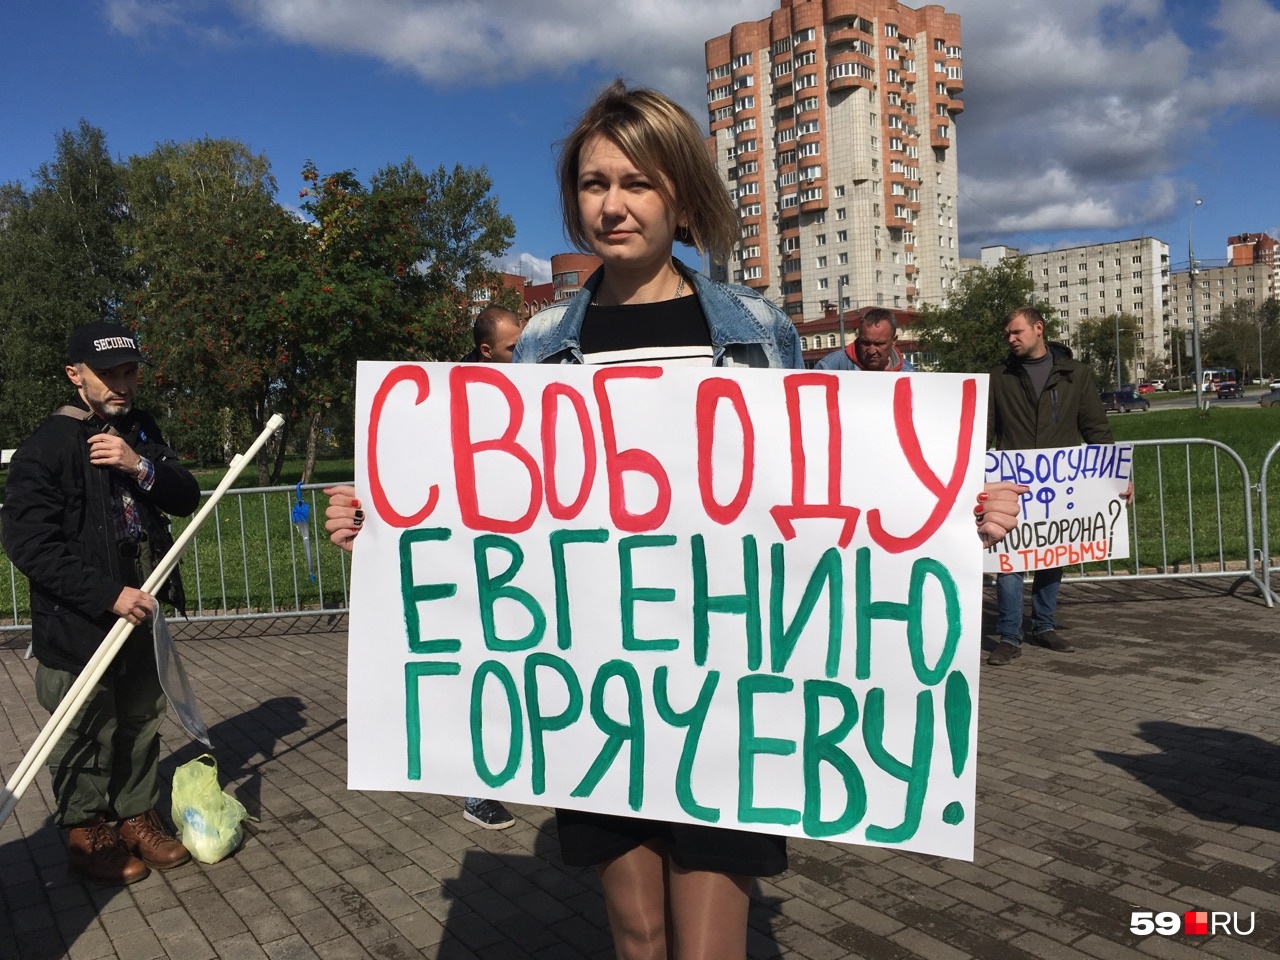 Супруга осужденного Виктория Прилукова в защиту мужа решила организовать митинг